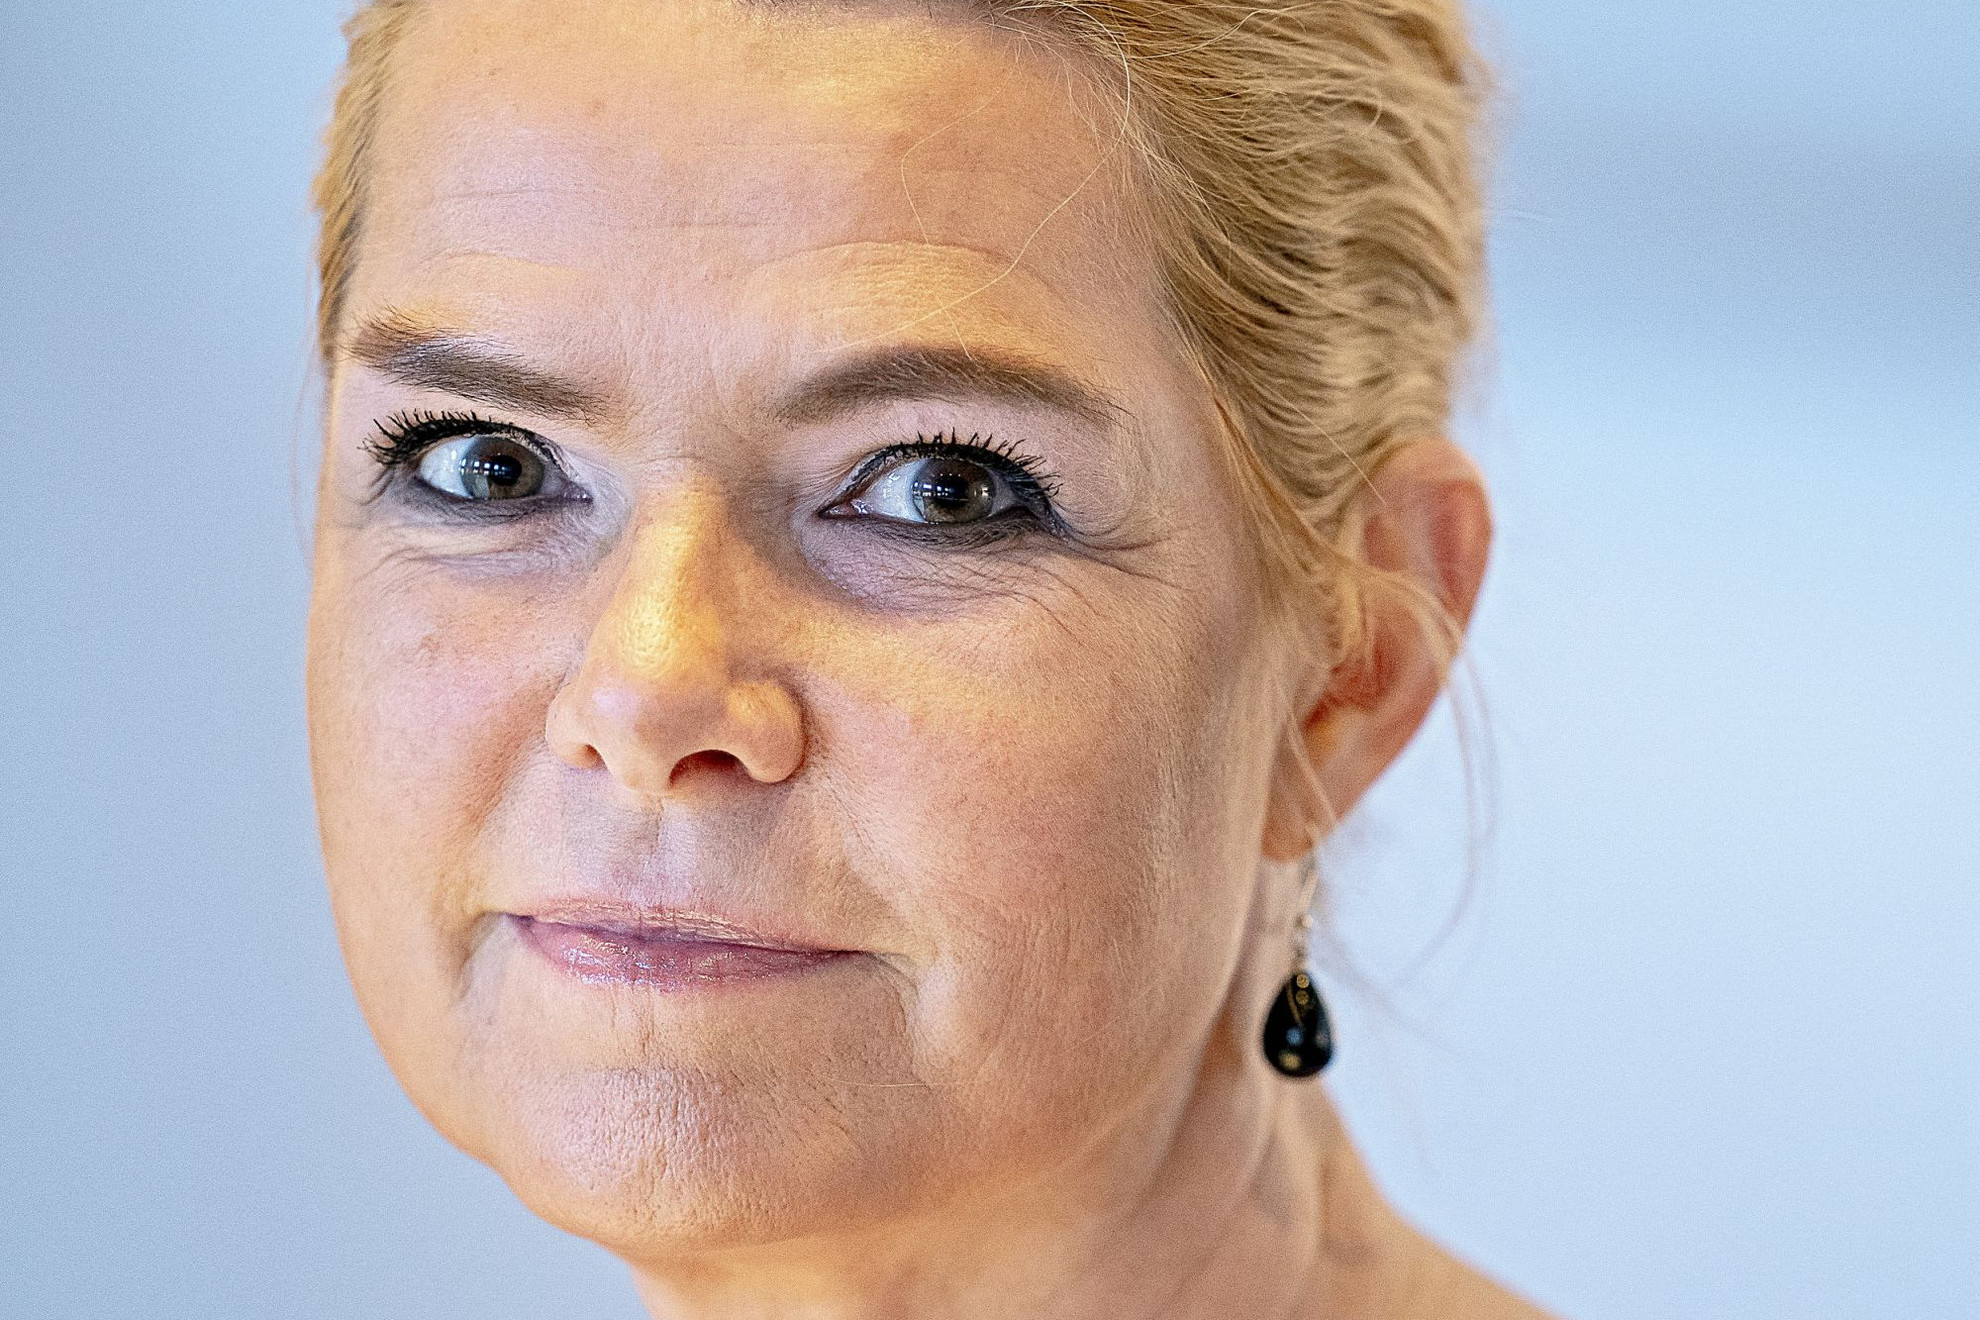 Emelt fővel fogadja büntetését a kiskorúakat védő dán politikus